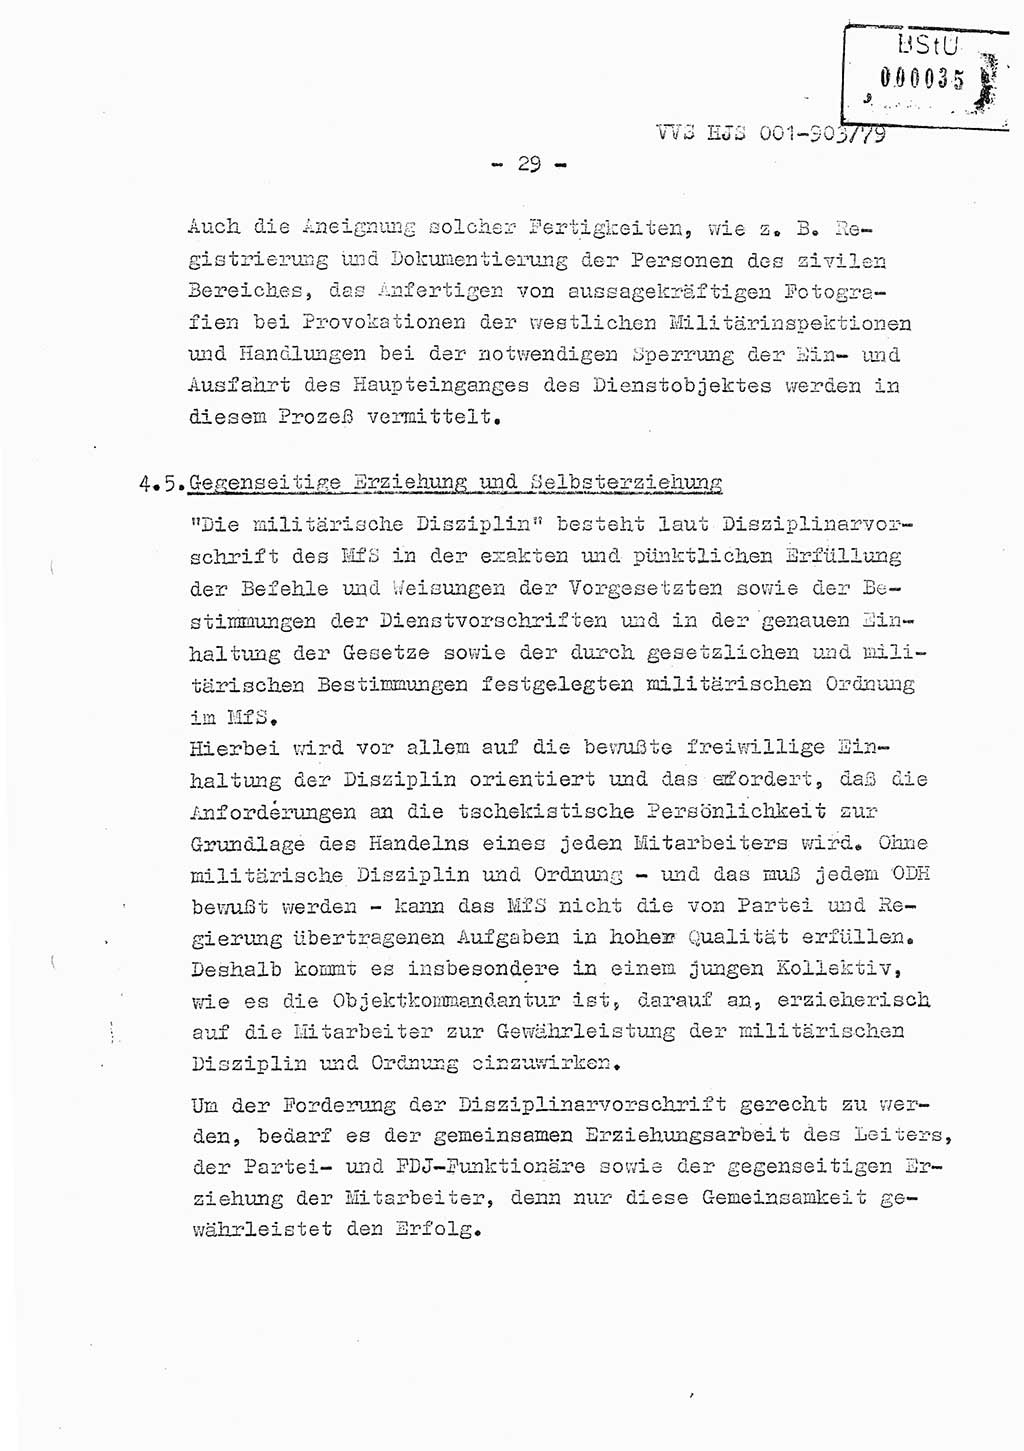 Fachschulabschlußarbeit Oberleutnant Jochen Pfeffer (HA Ⅸ/AGL), Ministerium für Staatssicherheit (MfS) [Deutsche Demokratische Republik (DDR)], Juristische Hochschule (JHS), Vertrauliche Verschlußsache (VVS) 001-903/79, Potsdam 1979, Seite 29 (FS-Abschl.-Arb. MfS DDR JHS VVS 001-903/79 1979, S. 29)